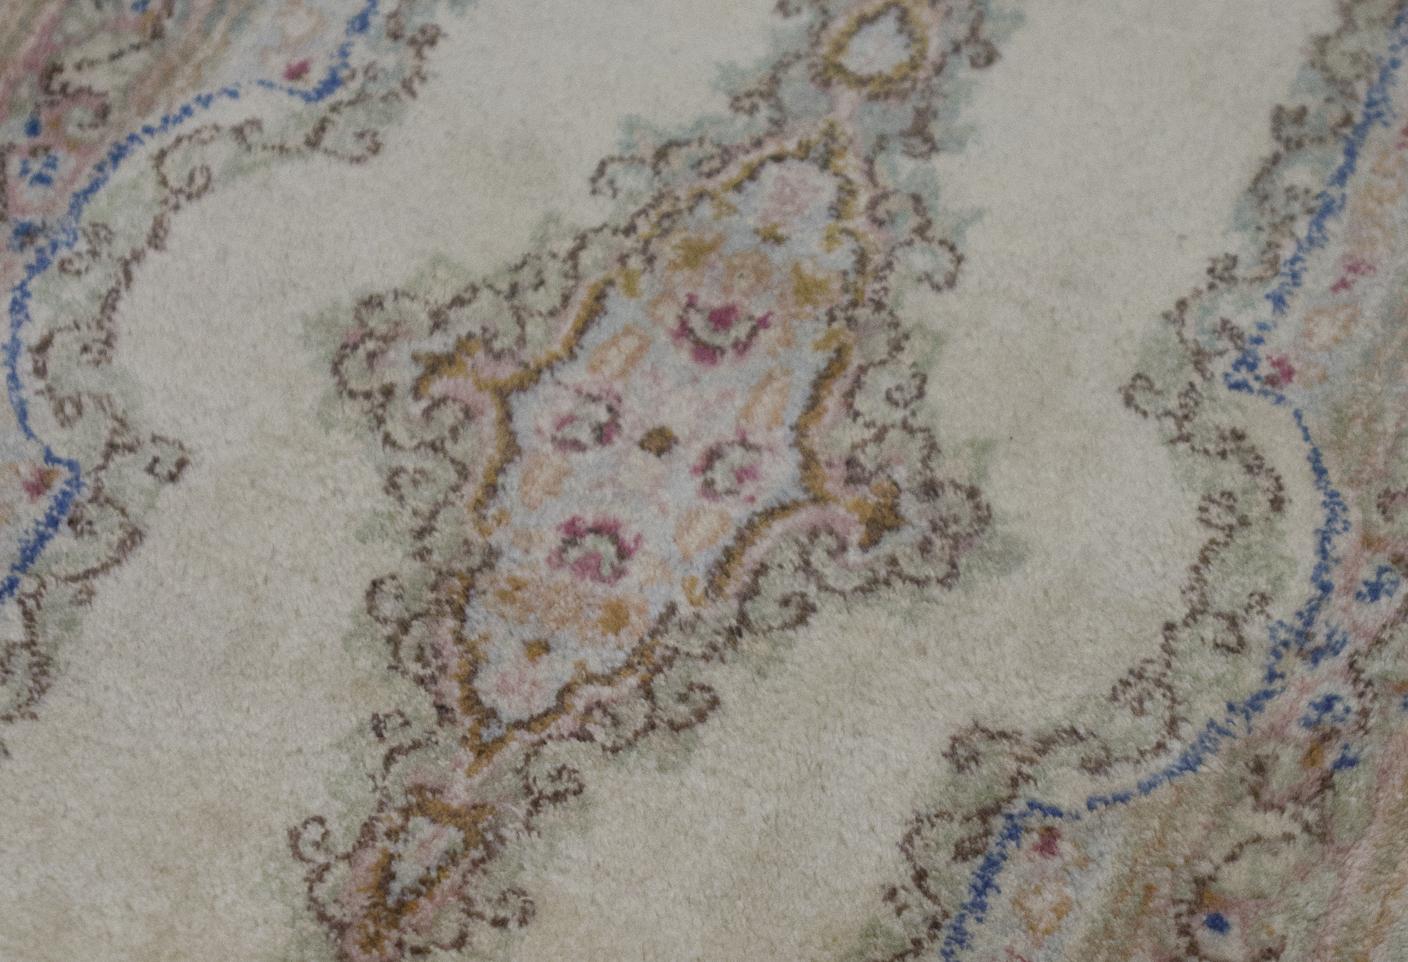 Alter persischer Kerman-Teppich, um 1940. Trotz seiner geringen Größe weist dieser alte Kerman-Teppich eine enorme Detailfülle in der Komposition mit den floralen Elementen auf, die sich im Medaillon und in den umgebenden Bordüren wiederholen, wobei